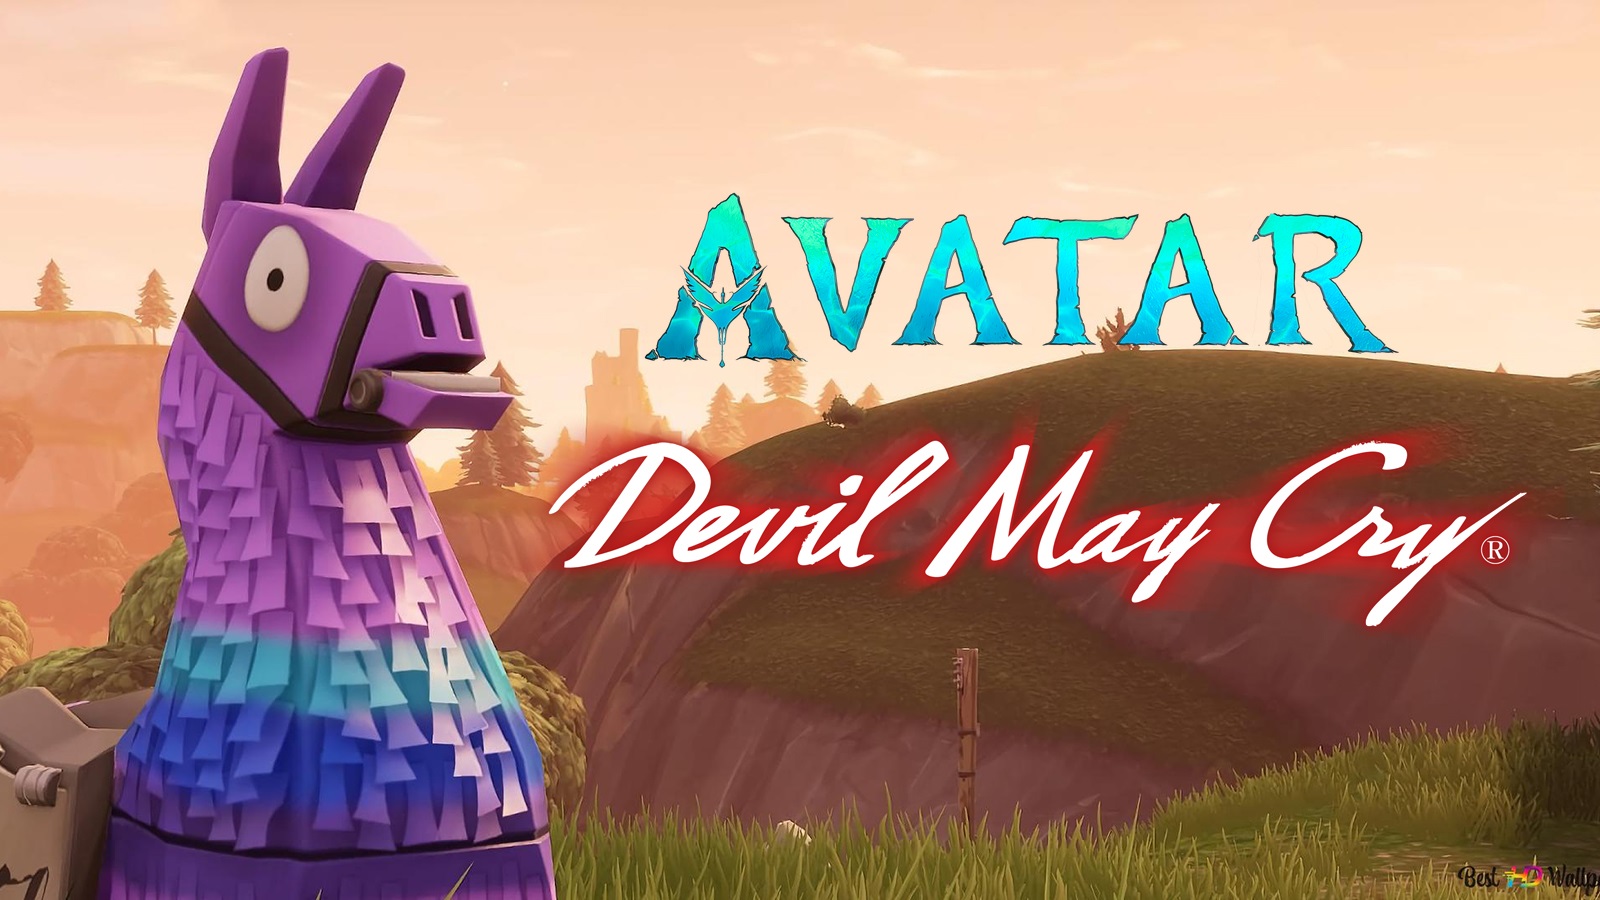 Il leak di Fortnite rivela la collaborazione con Devil May Cry e Avatar